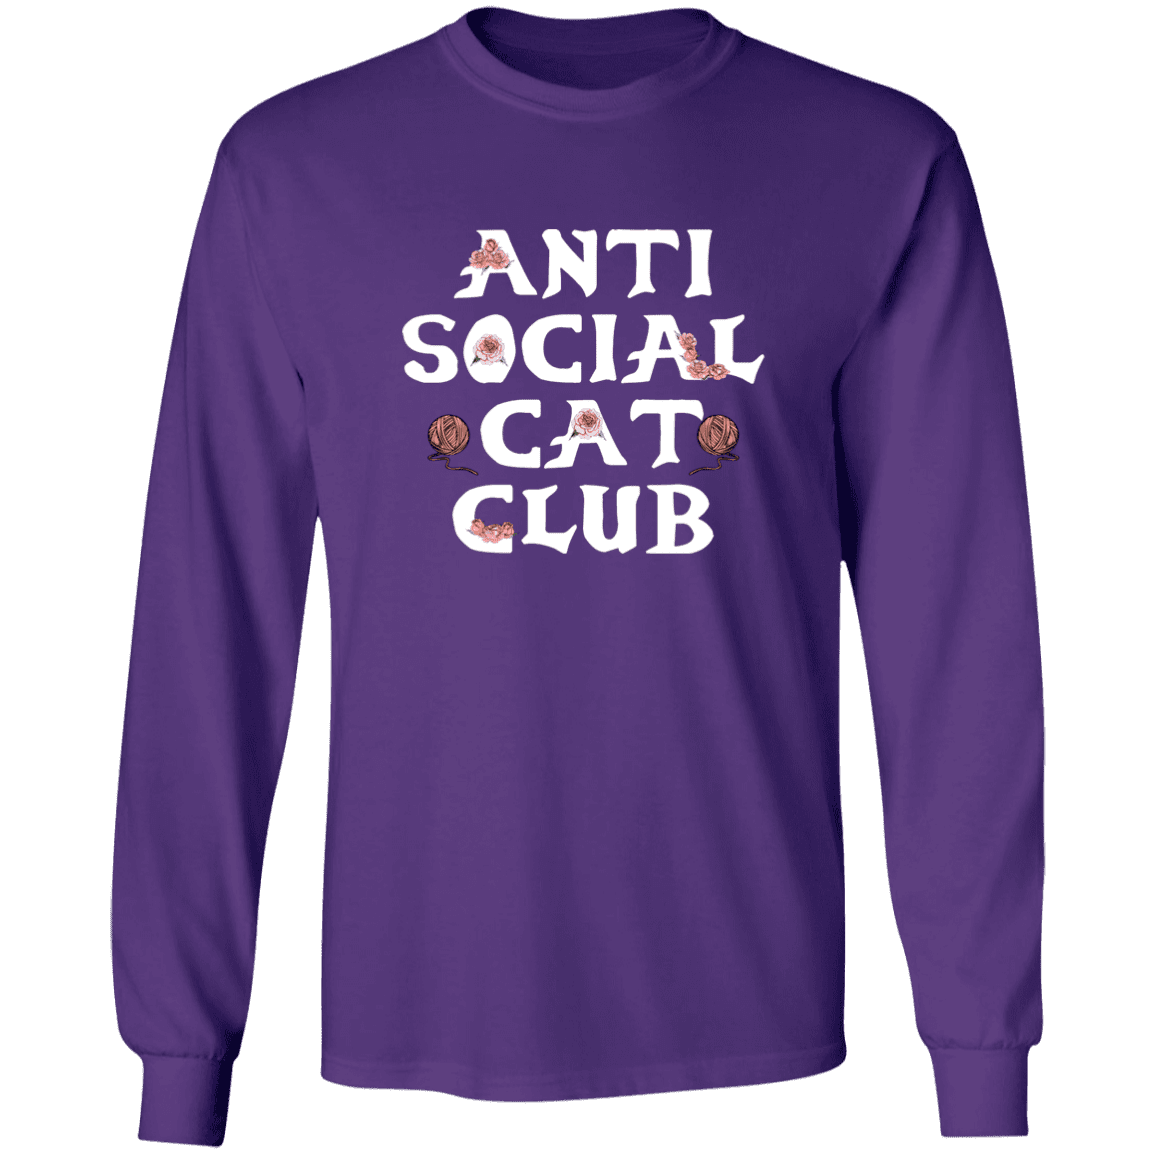 Anti Social Cat Club - Long Sleeve T Shirt.